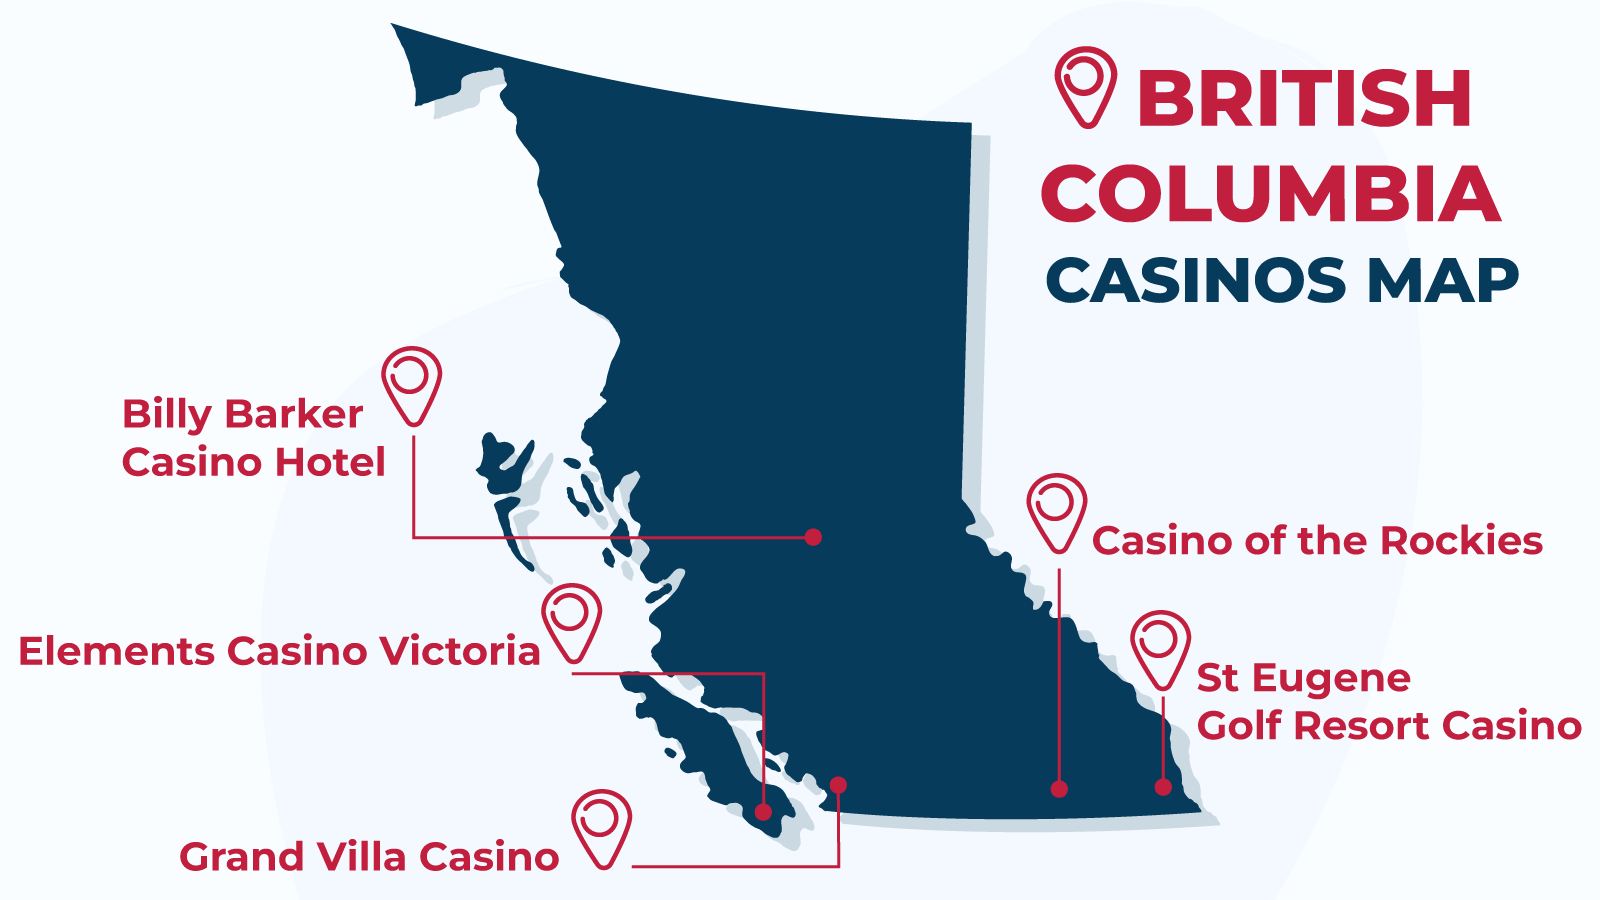 British Columbia Casinos Map